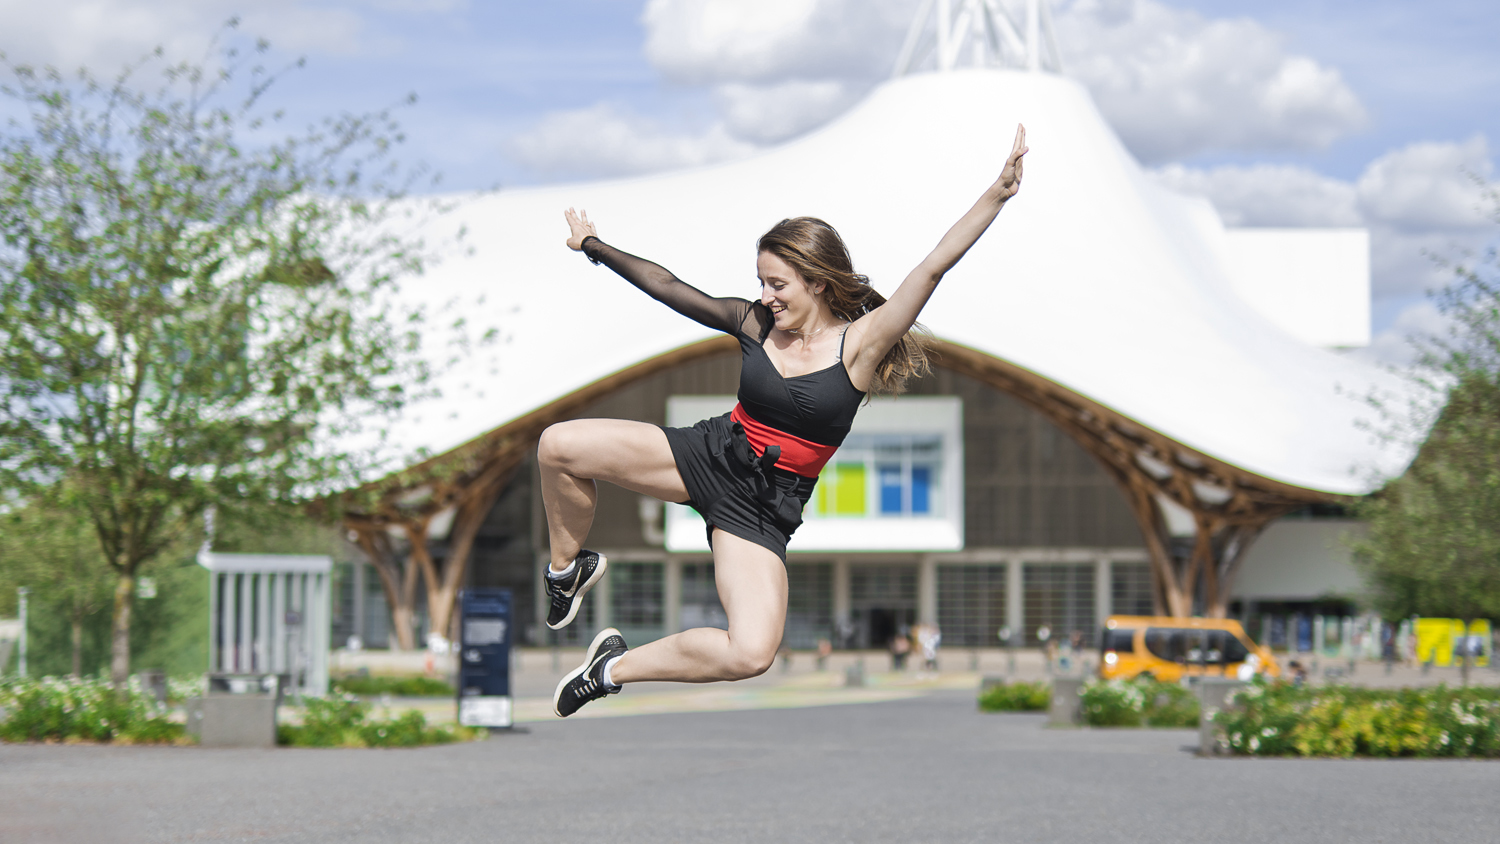 Photographie couleur de Cécile Reiter qui effectue un saut de danse nommé Aile de Pigeon devant le Centre Pompidou de Metz